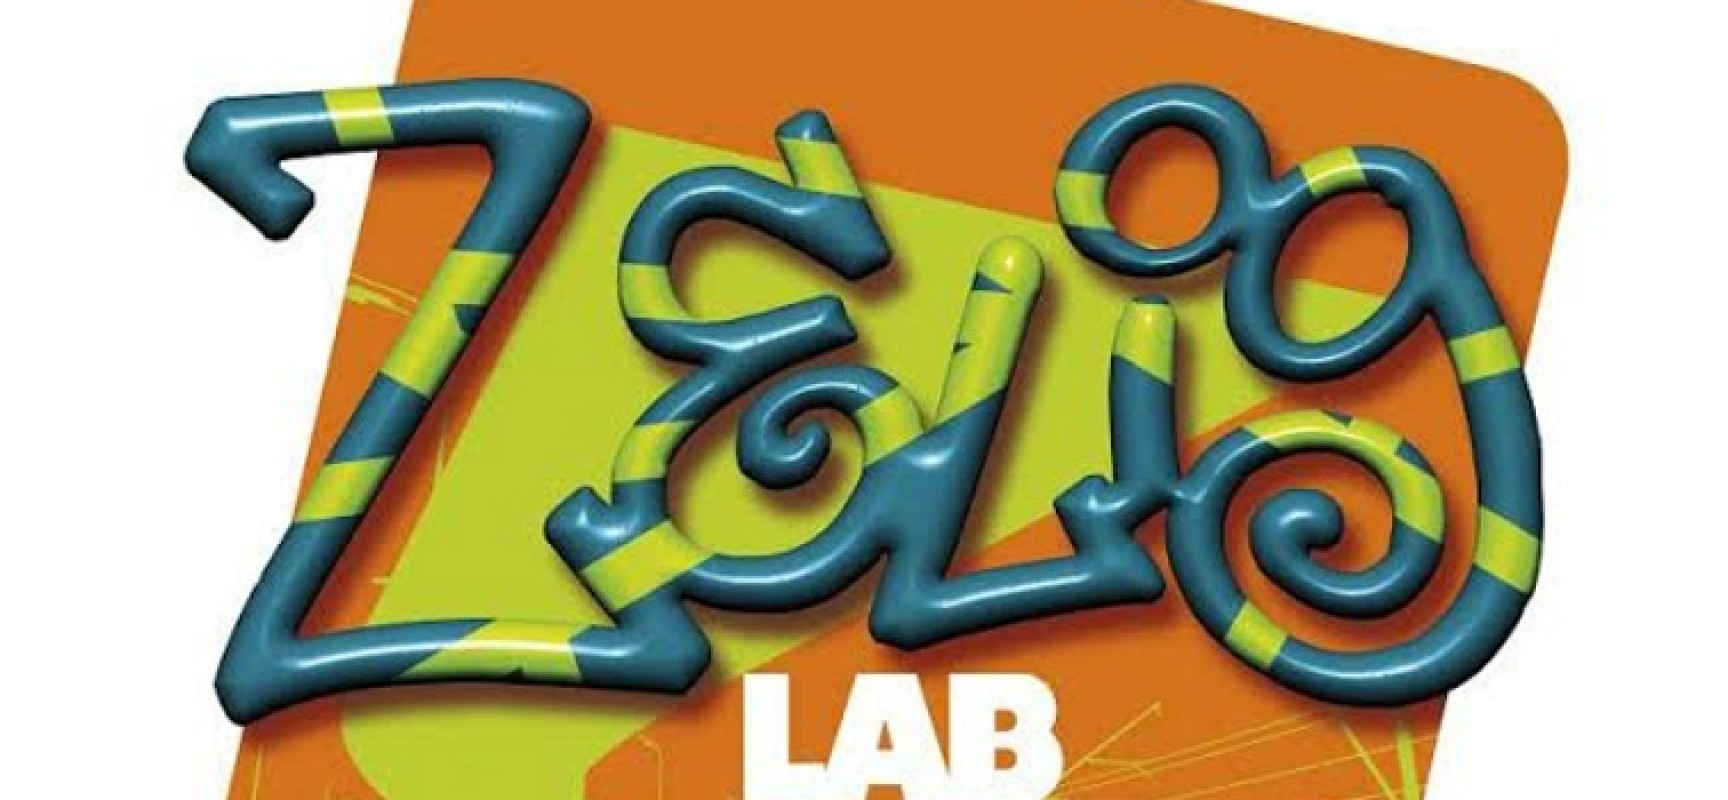 La kermesse comica di Zelig Lab ritorna sul palco del circolo Arci Open Source / DATE